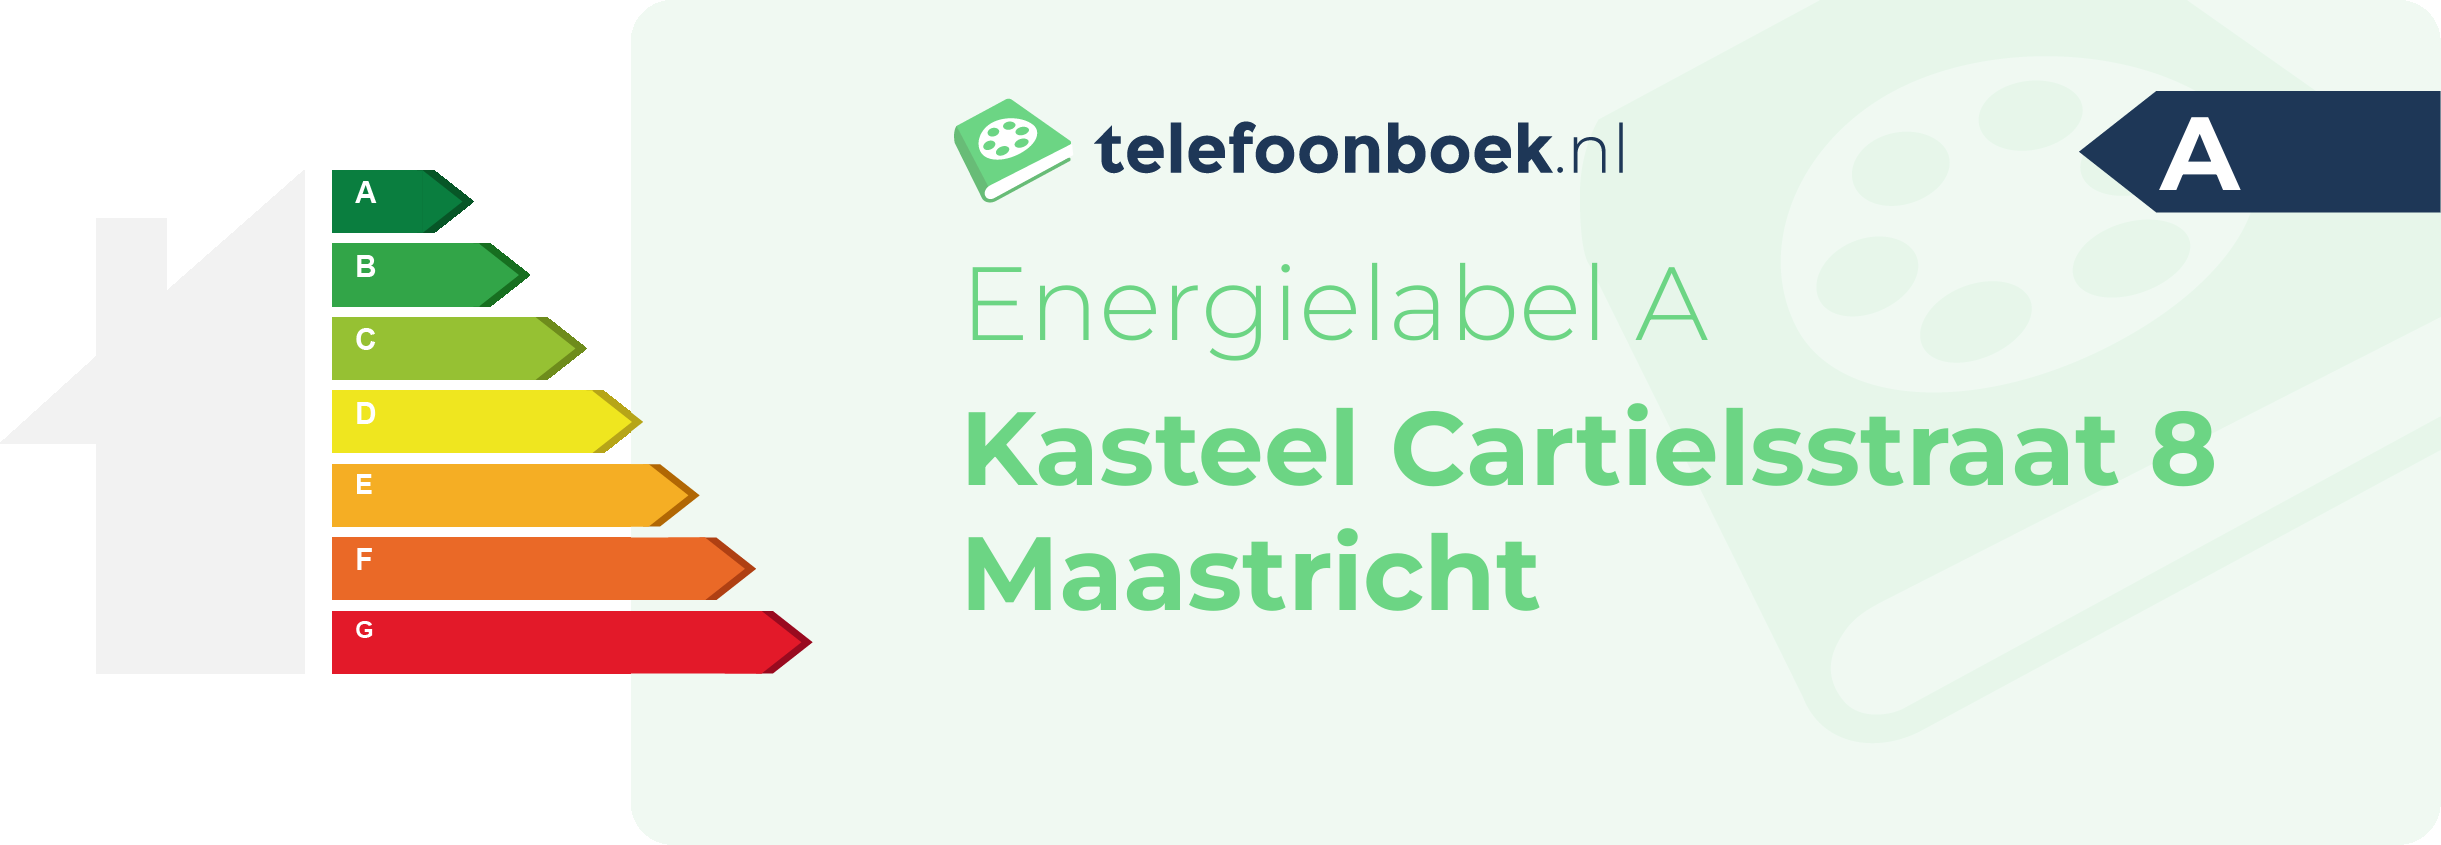 Energielabel Kasteel Cartielsstraat 8 Maastricht